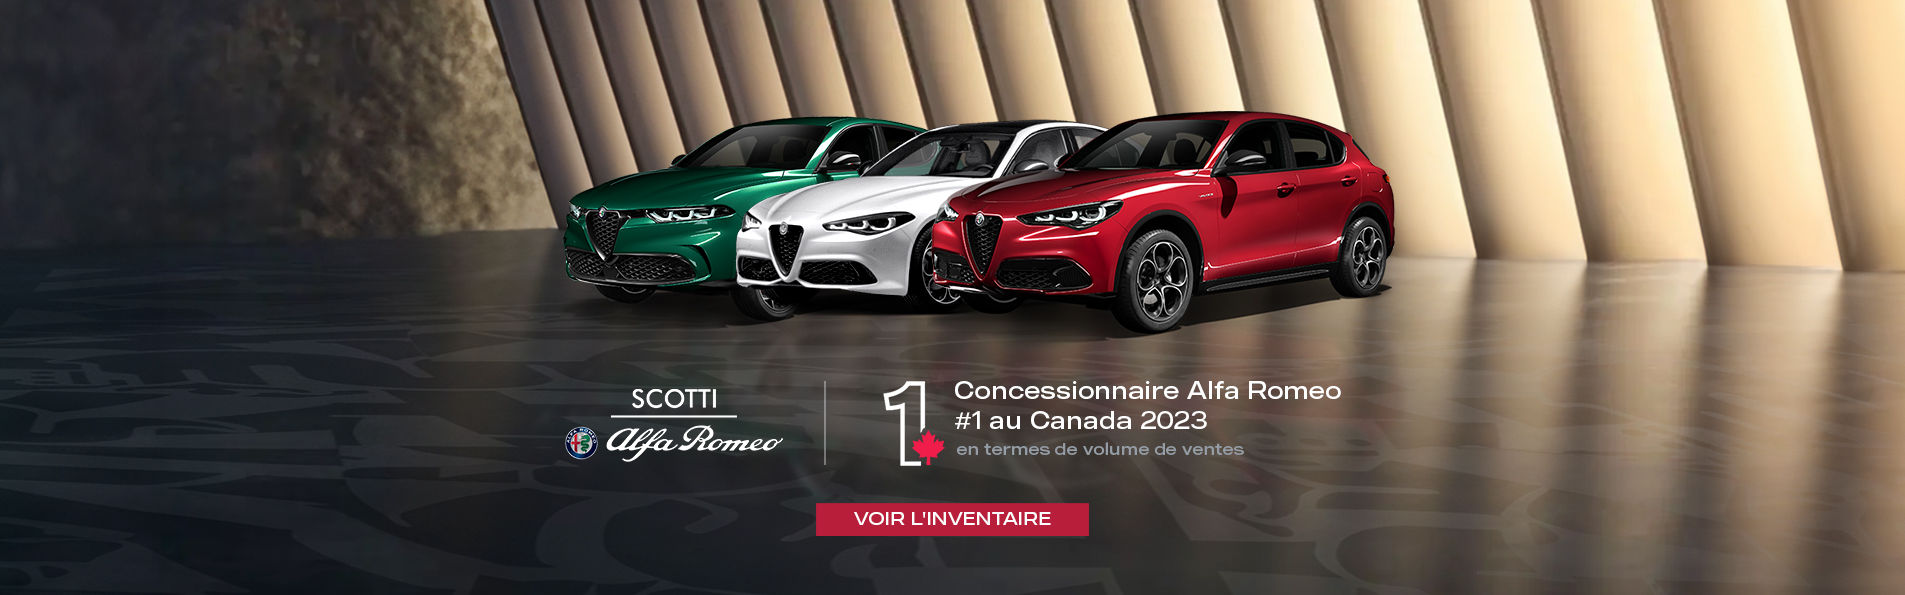 Concessionnaire Alfa Romeo numéro 1 au Canada